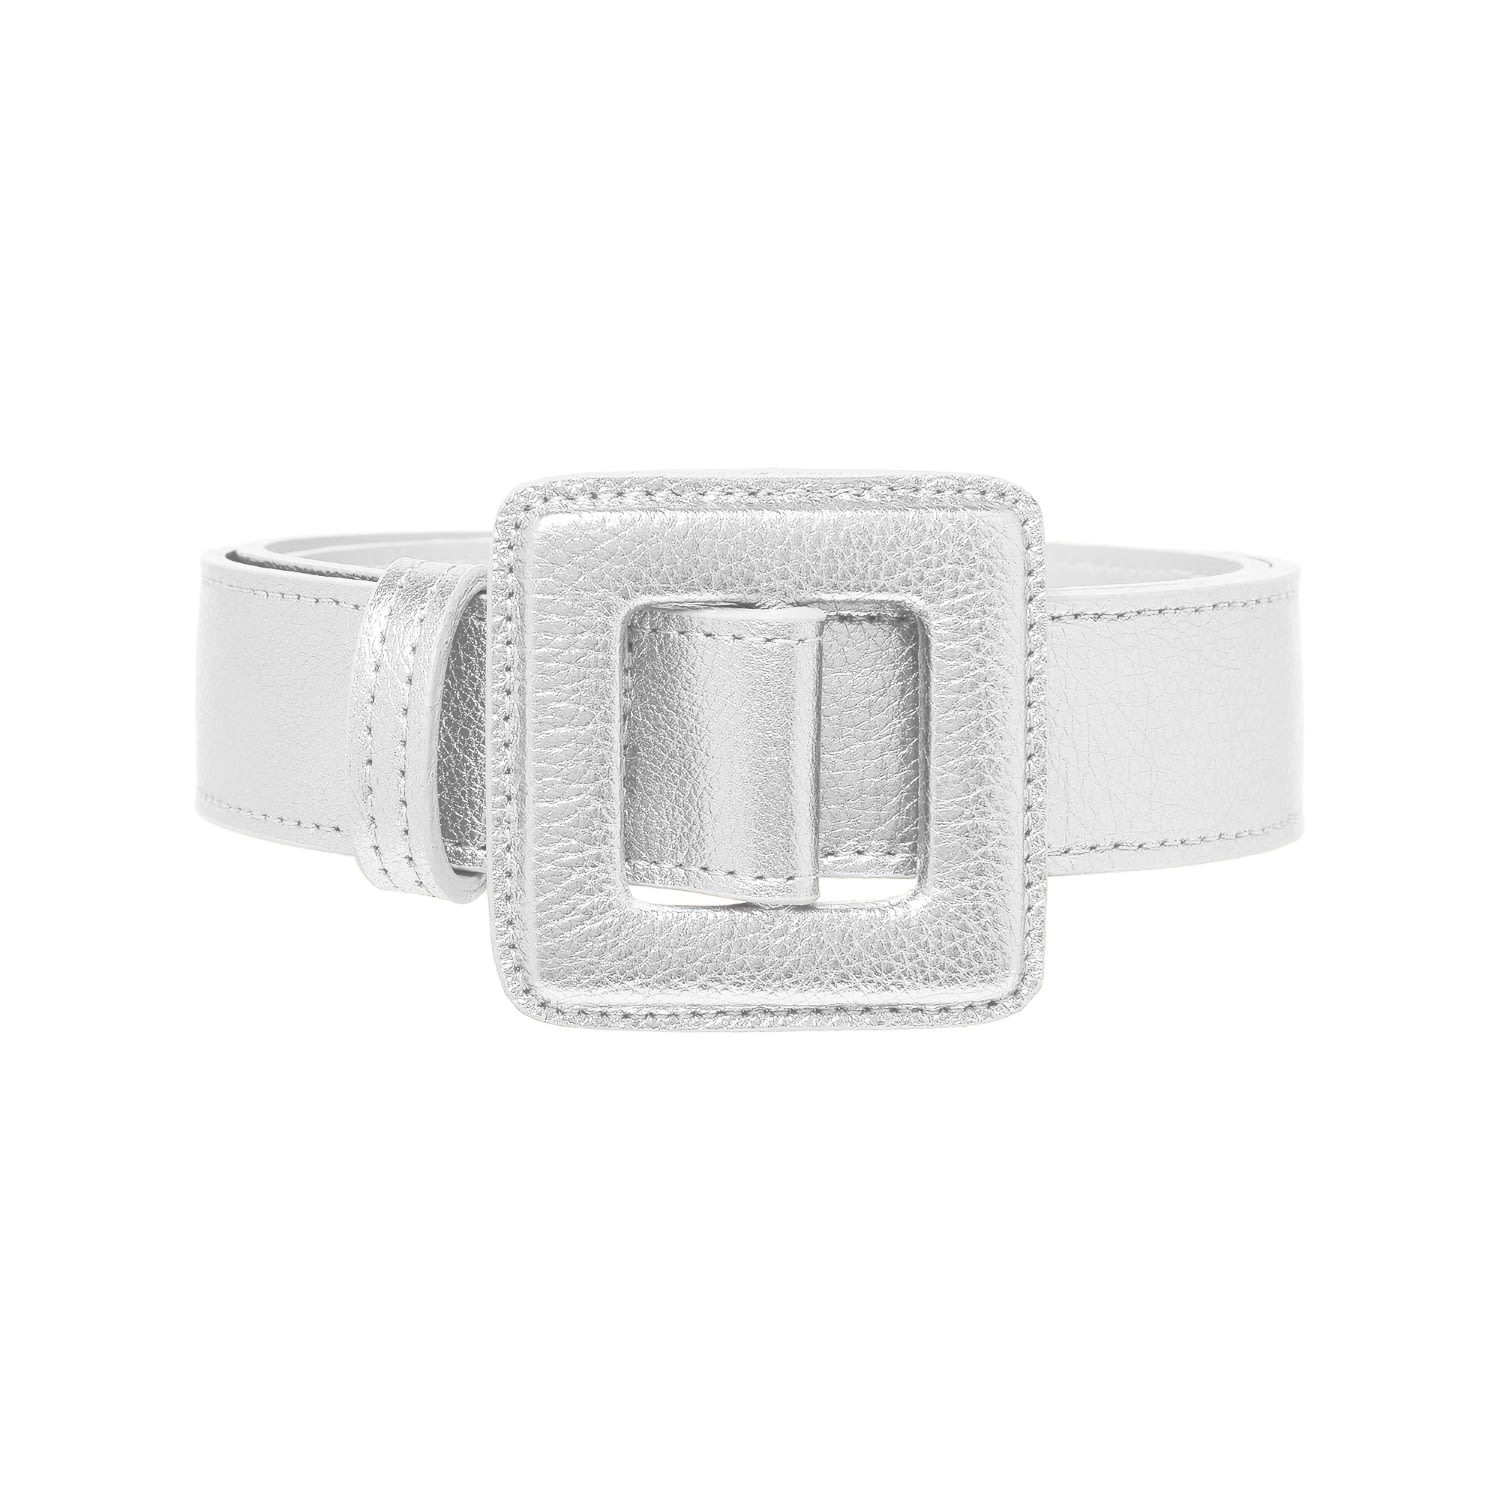 Beltbe Women's Mini Square Metallic Buckle Belt - Silver Shimmer In White